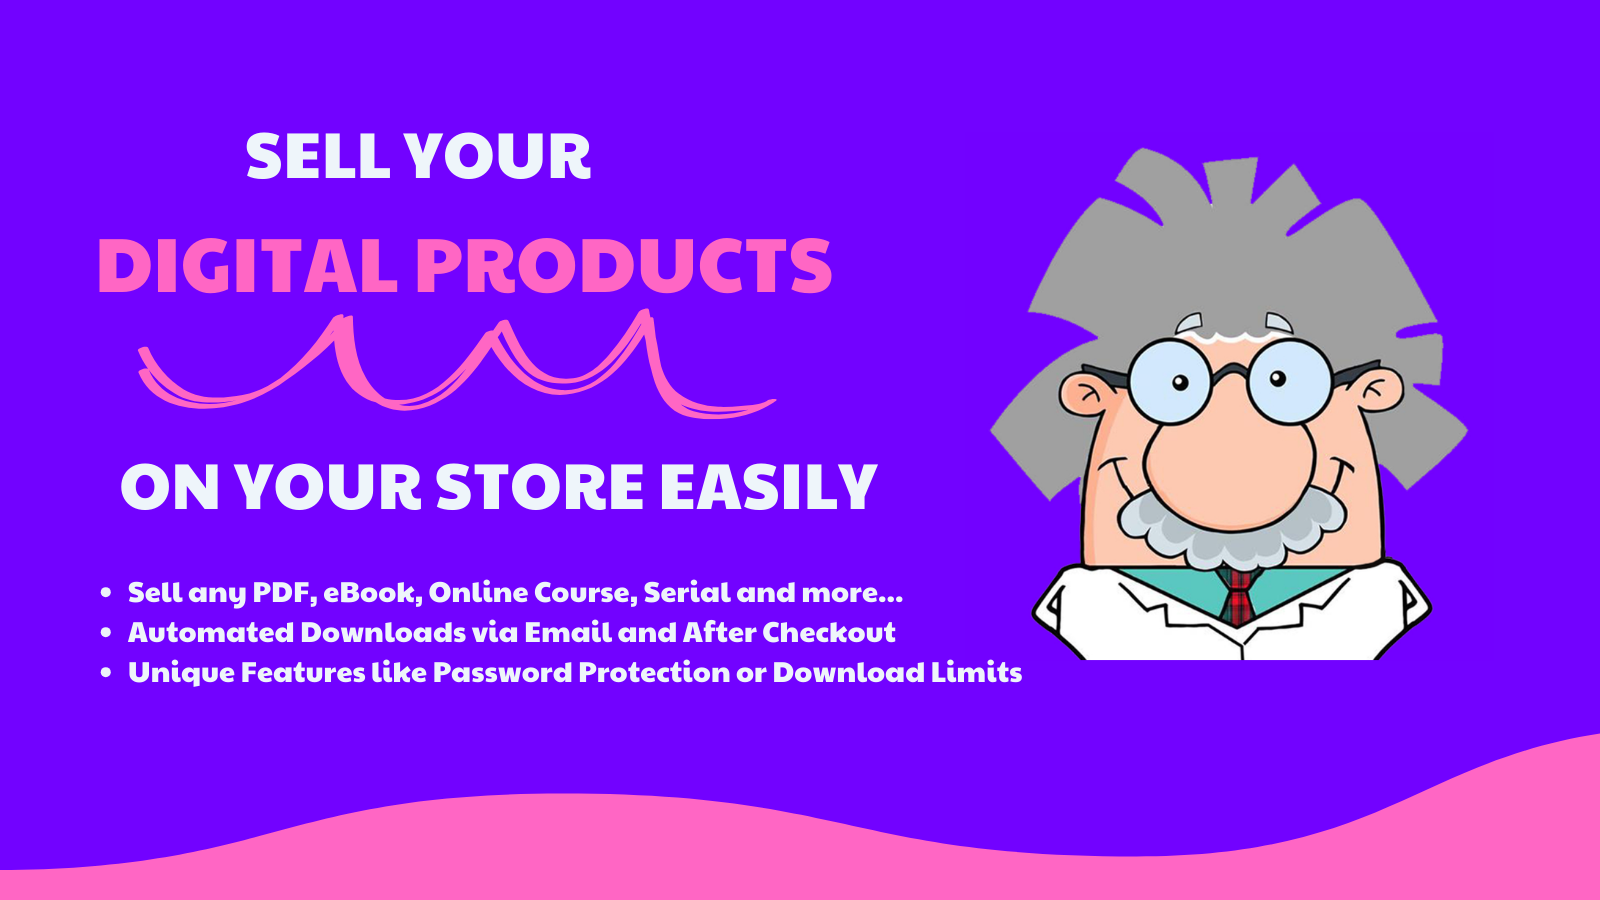 Verkaufen Sie Ihre digitalen Produkte einfach in Ihrem Shop